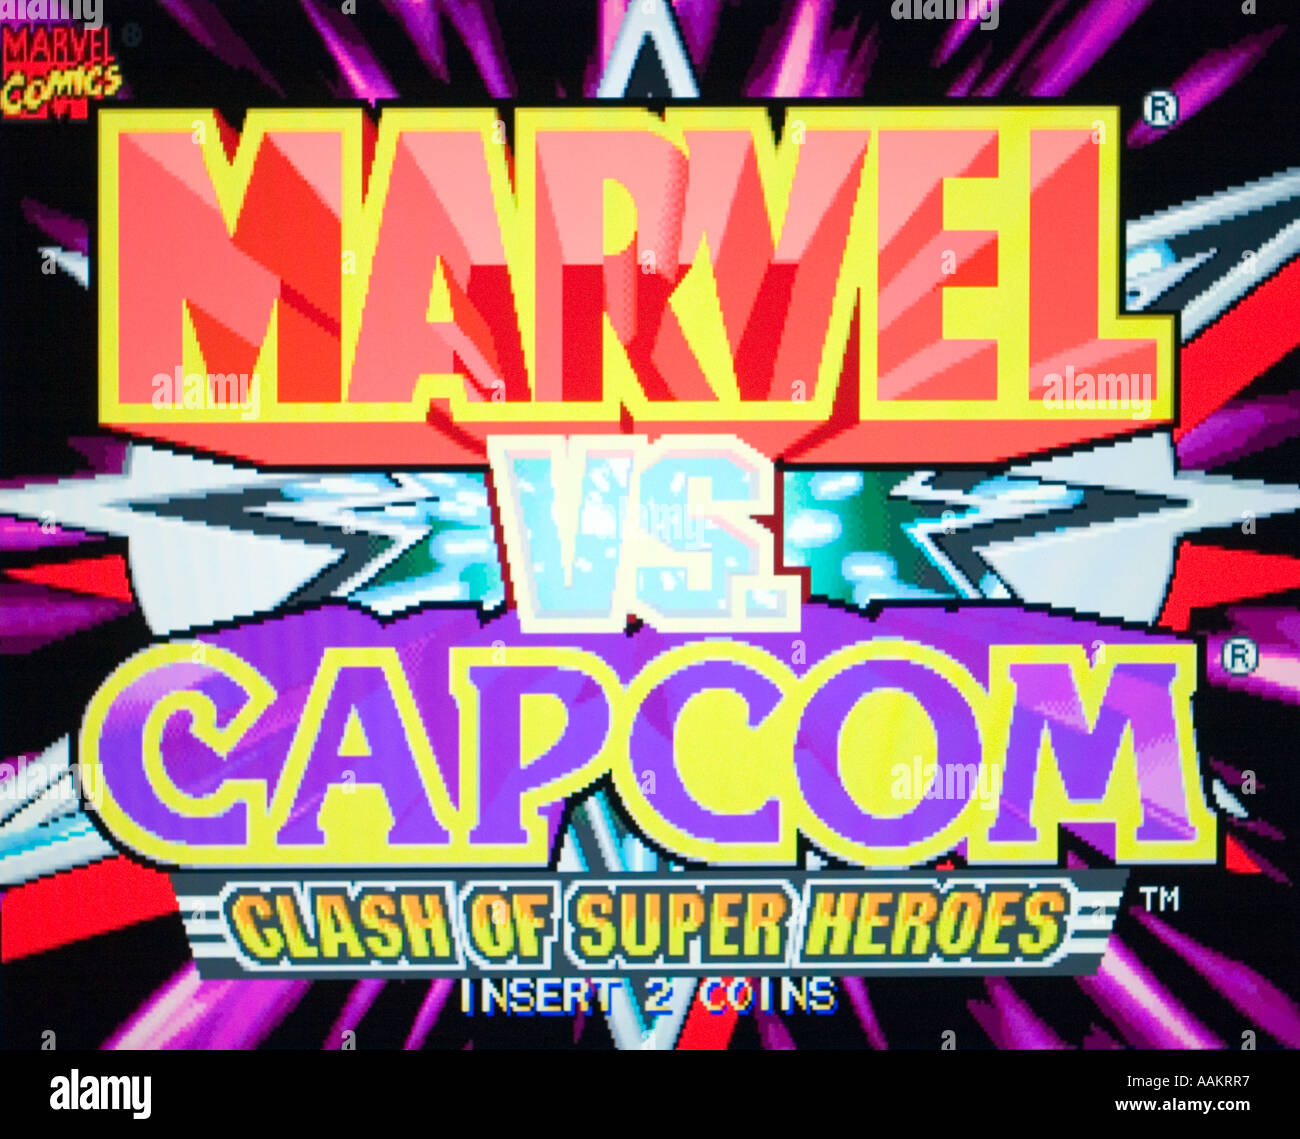 Marvel Vs Capcom Clash Of Super Heros Marvel Comics Capcom